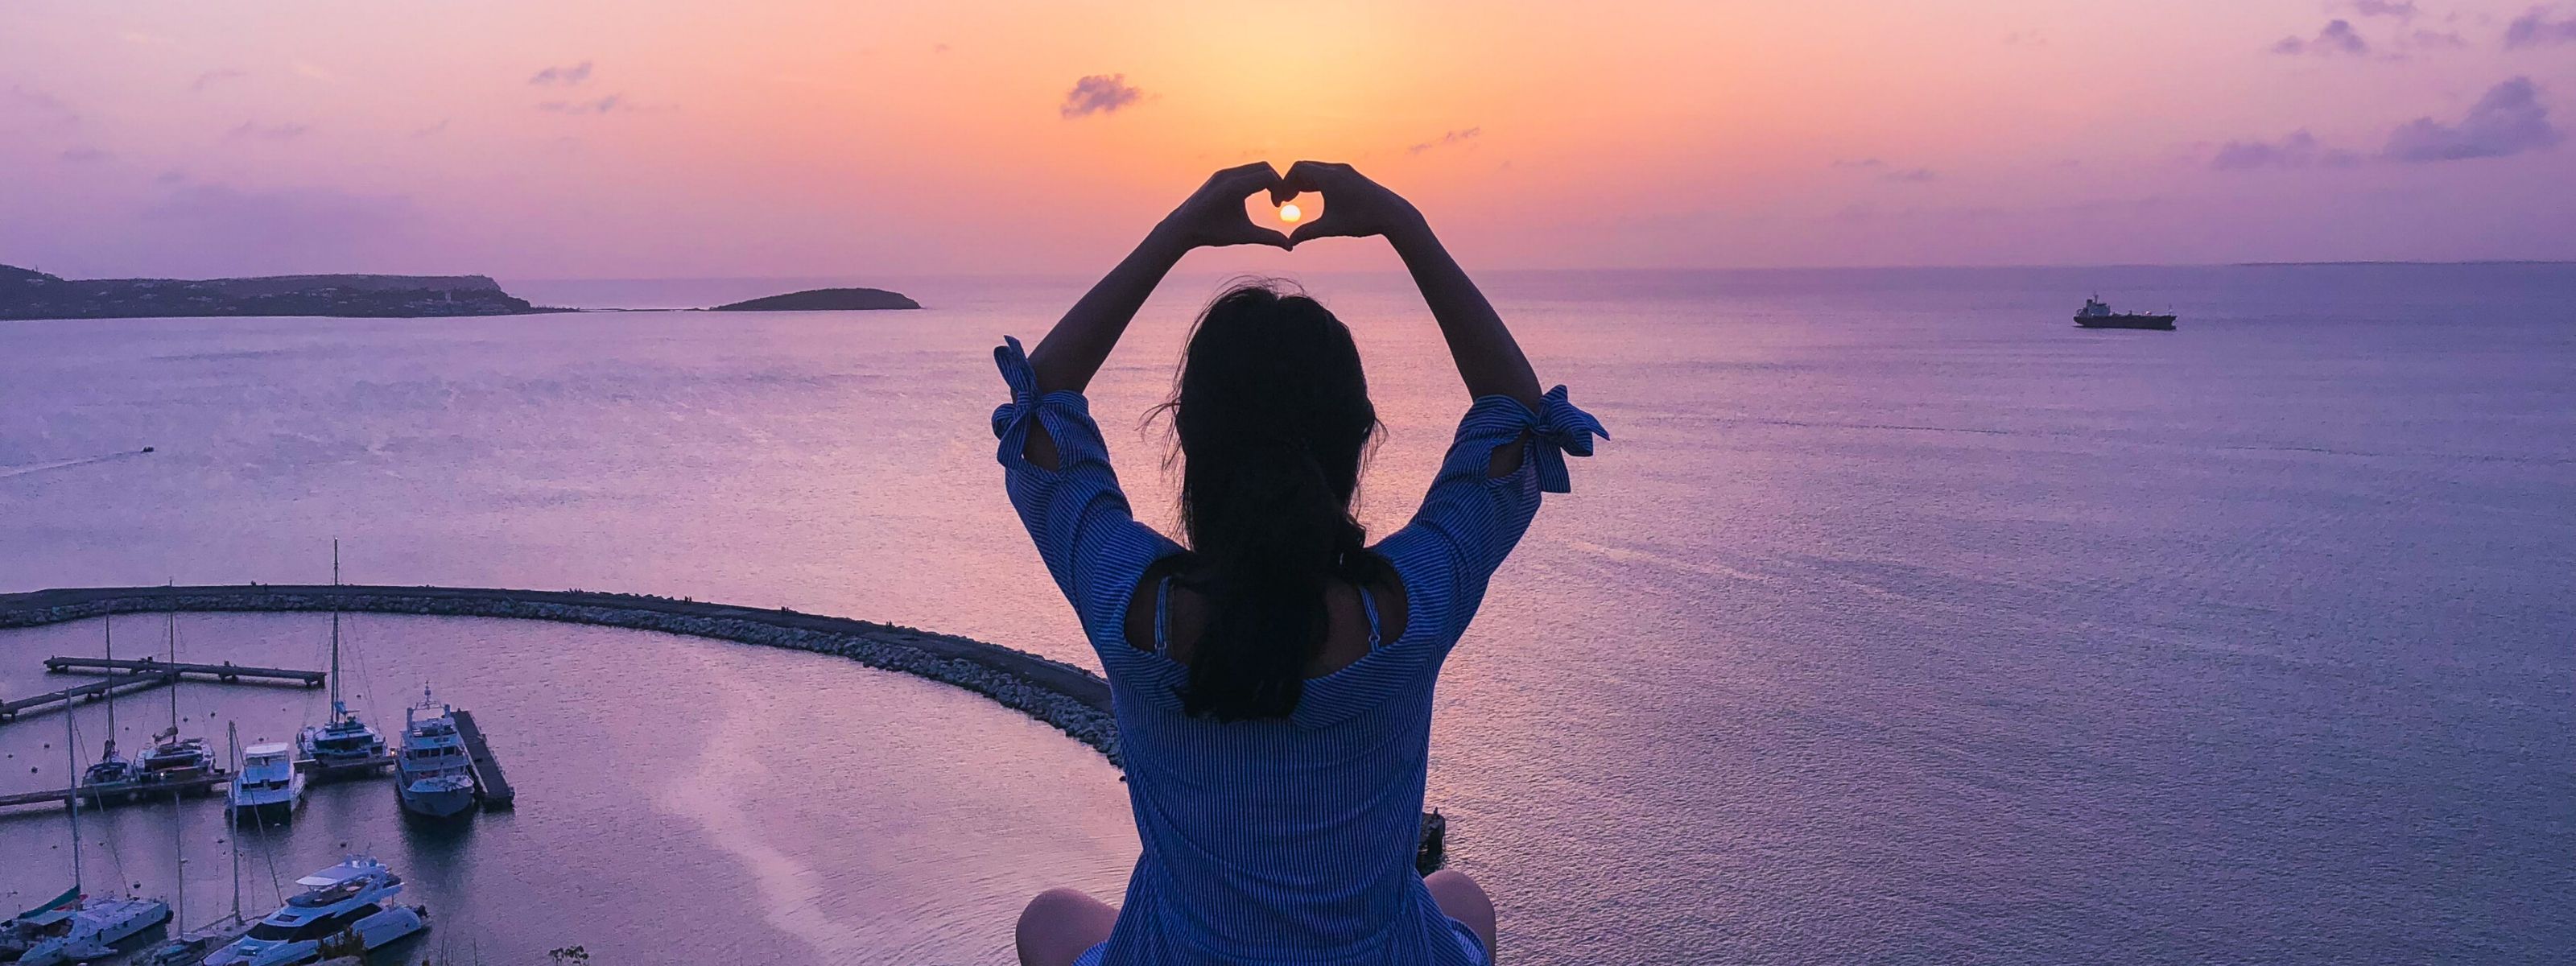 Kobieta układa dłonie w kształt serca na tle zachodu słońca nad morzem.